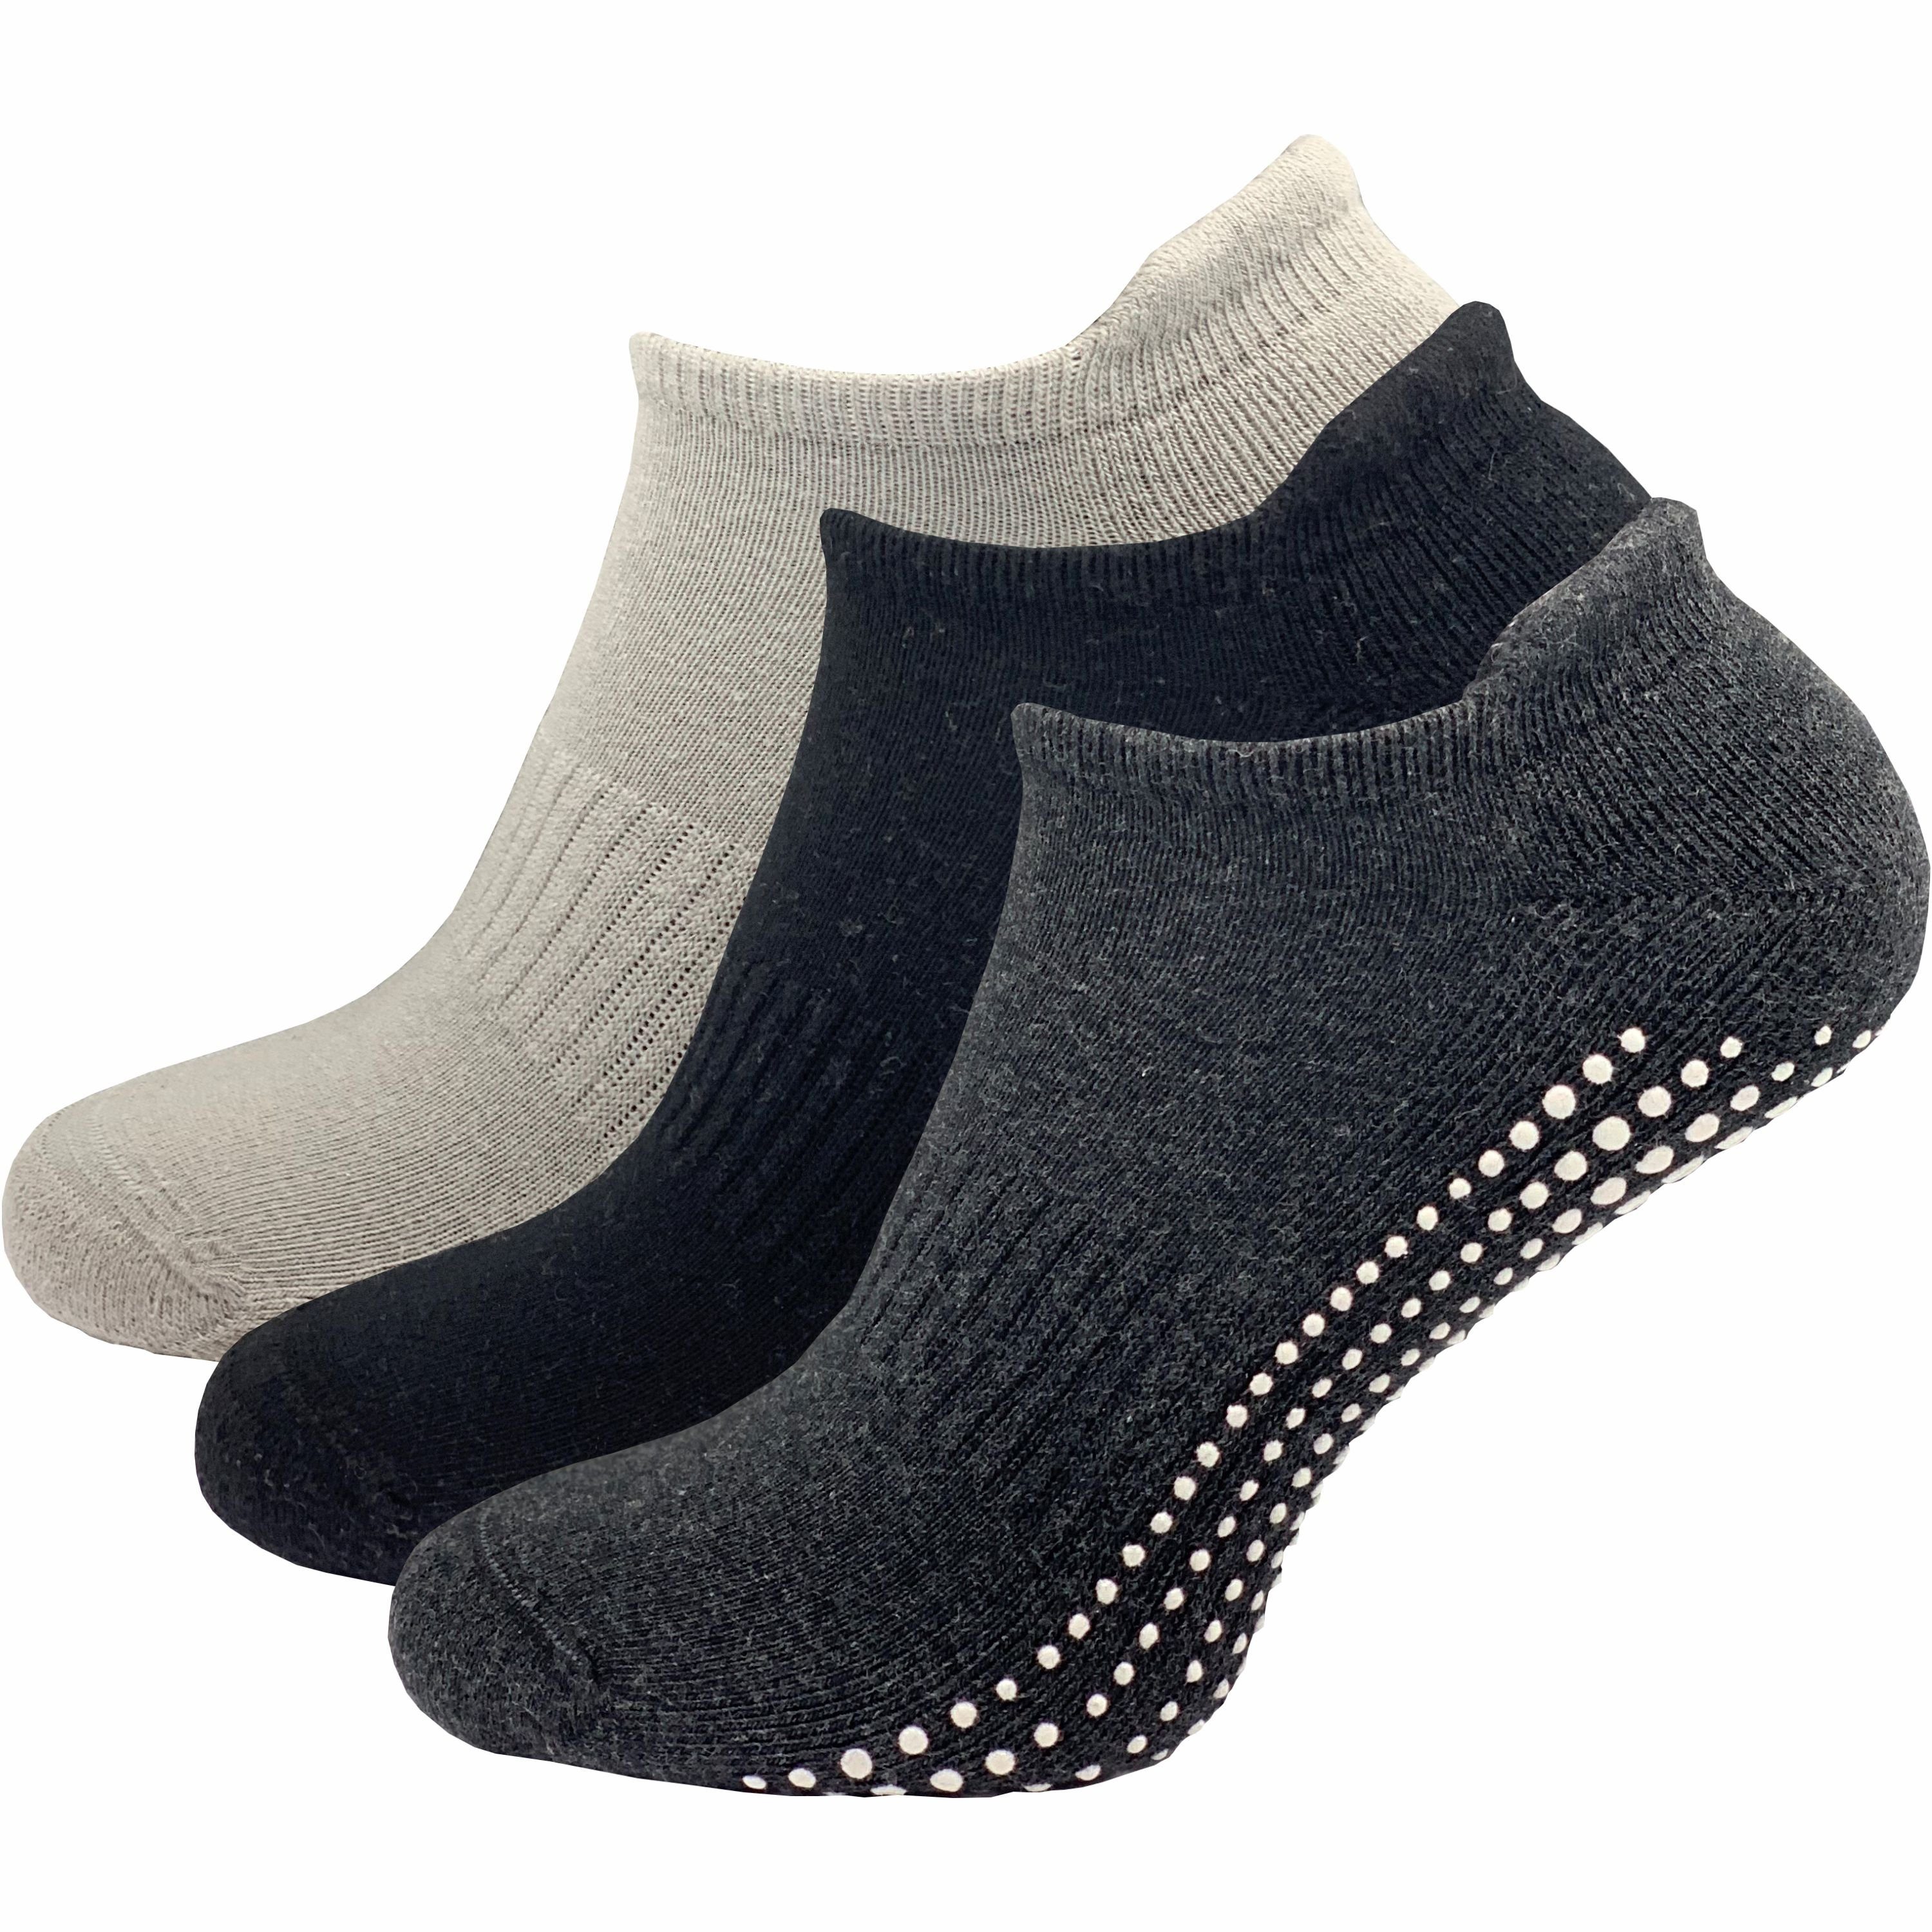 GAWILO ABS-Socken für Damen - Yoga & Pilates Socken - sicherer Halt auf glatten Böden (3 Paar) - rutschfest - mit hohem Baumwollanteil farbig 2